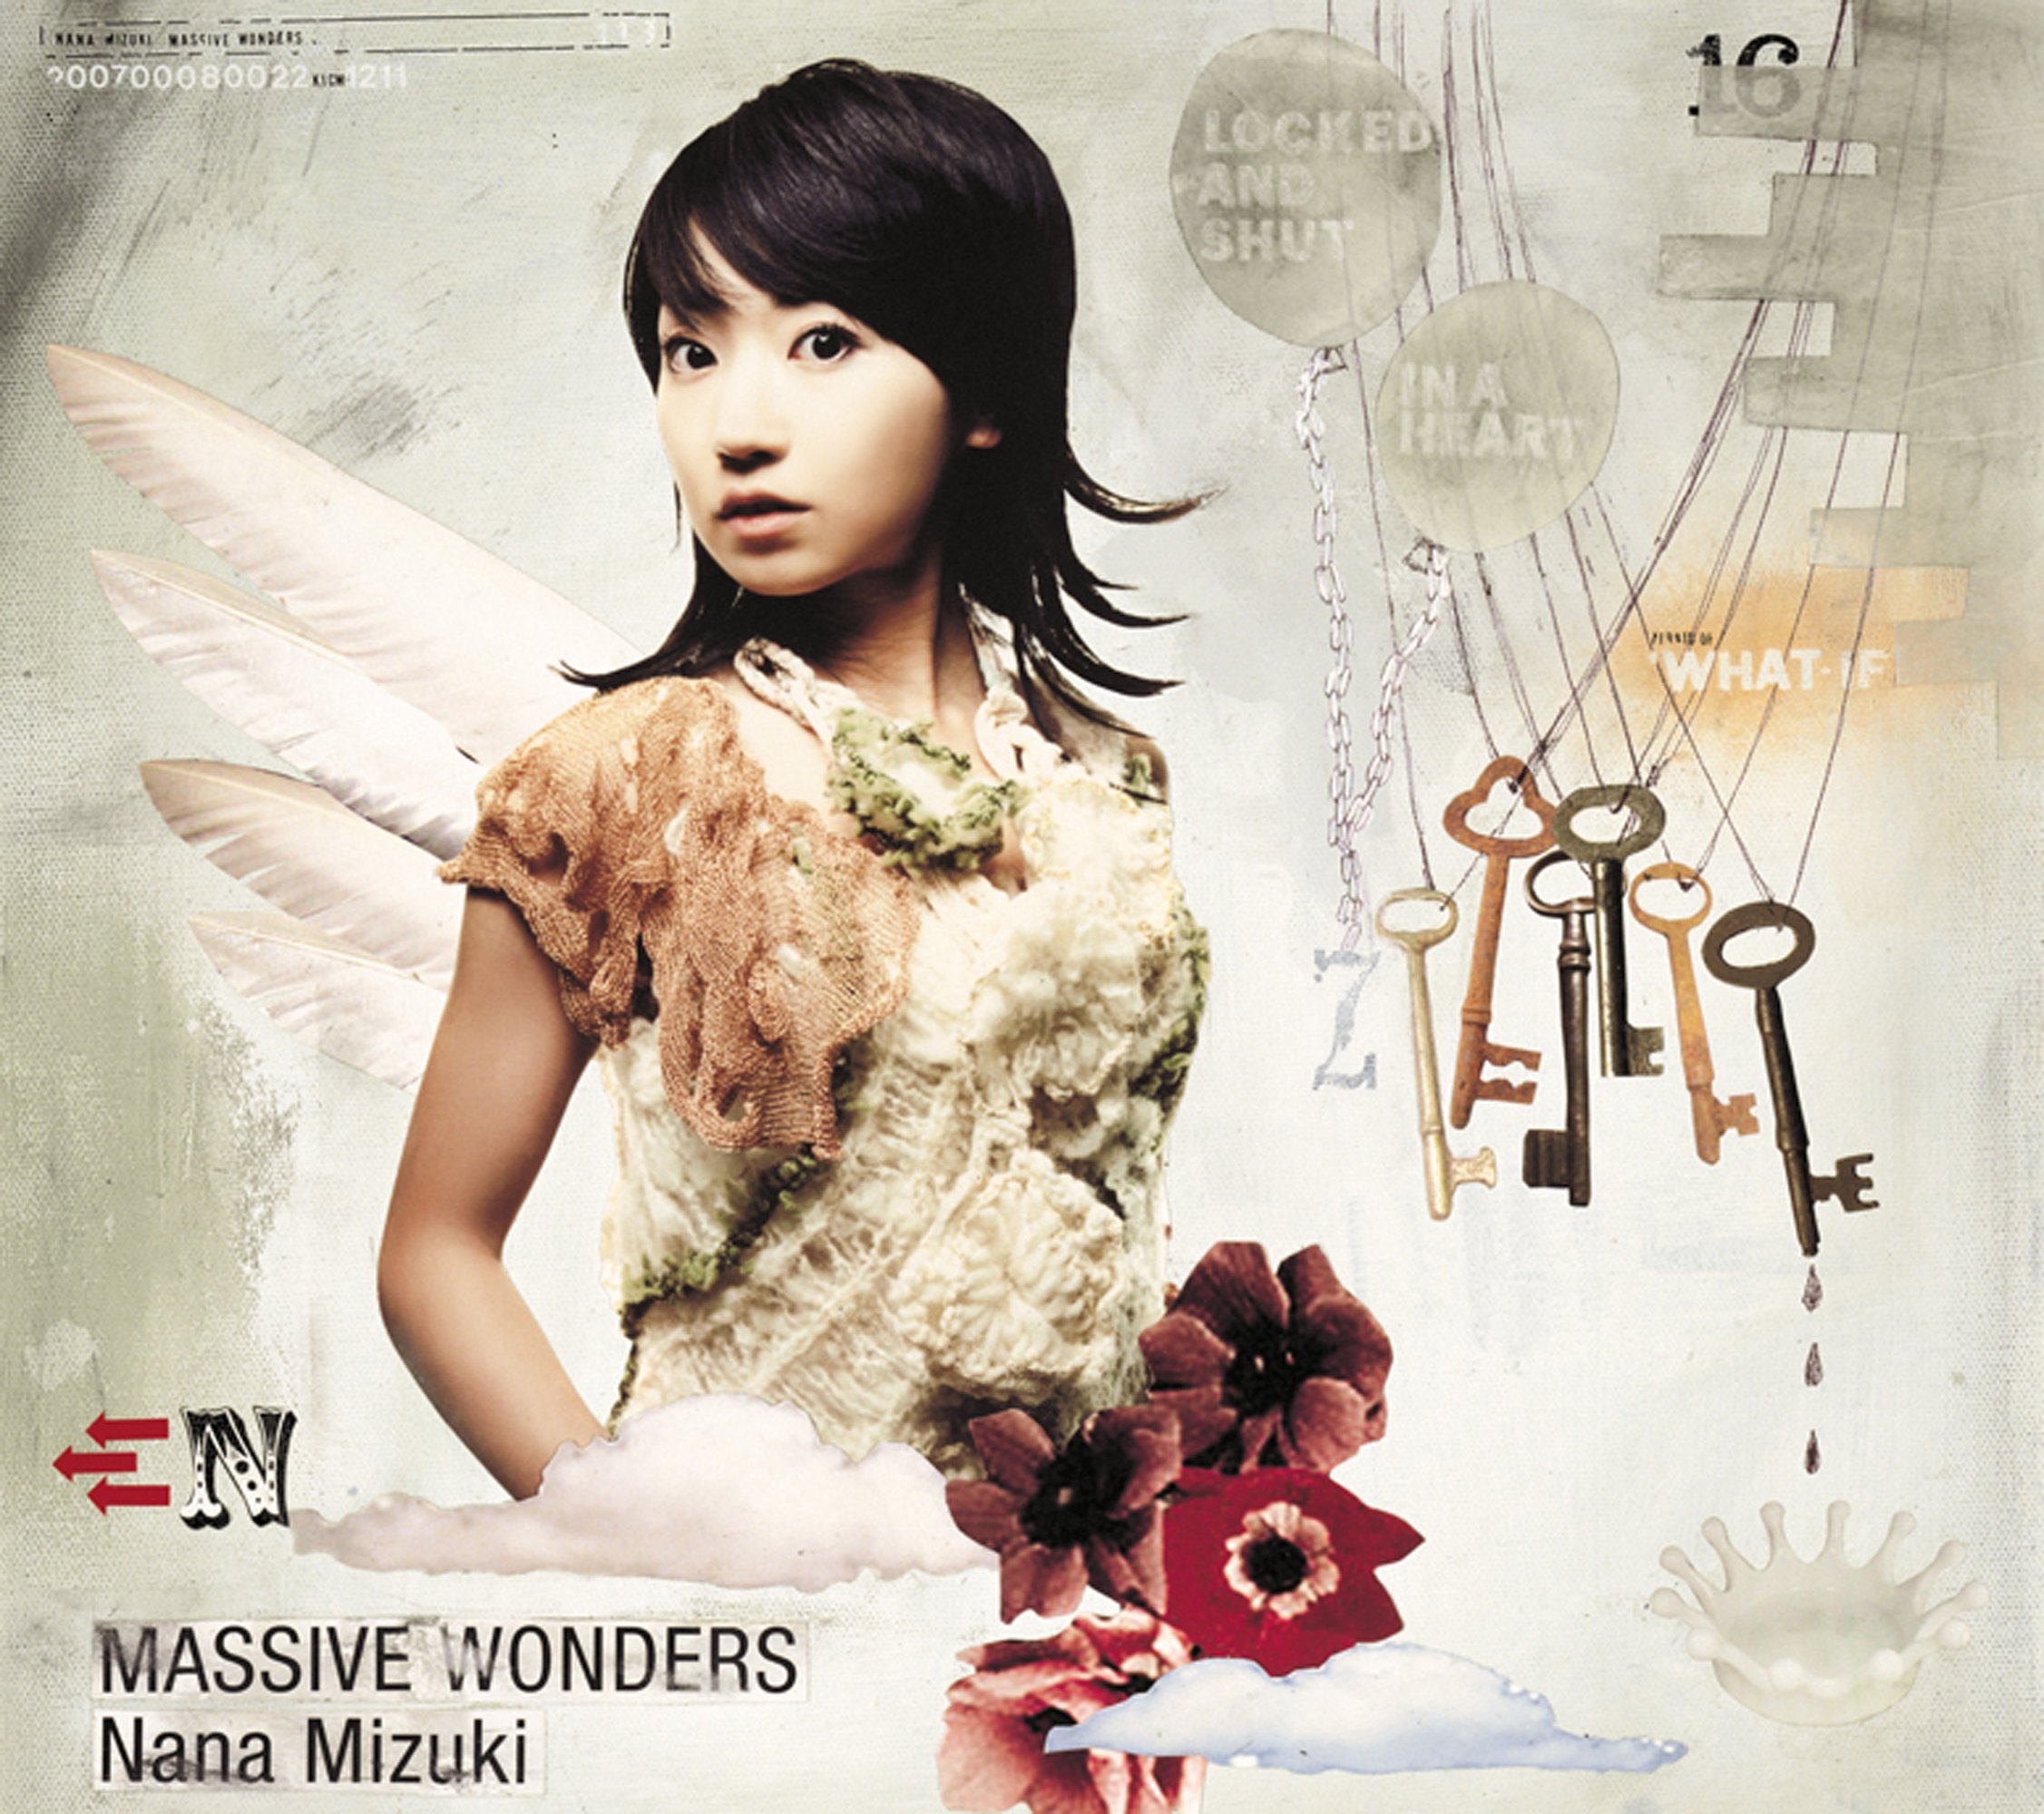 水樹奈々 (みずきなな) 16thシングル『MASSIVE WONDERS (マッシヴ・ワンダーズ)』(2007年8月22日発売) 高画質CDジャケット画像